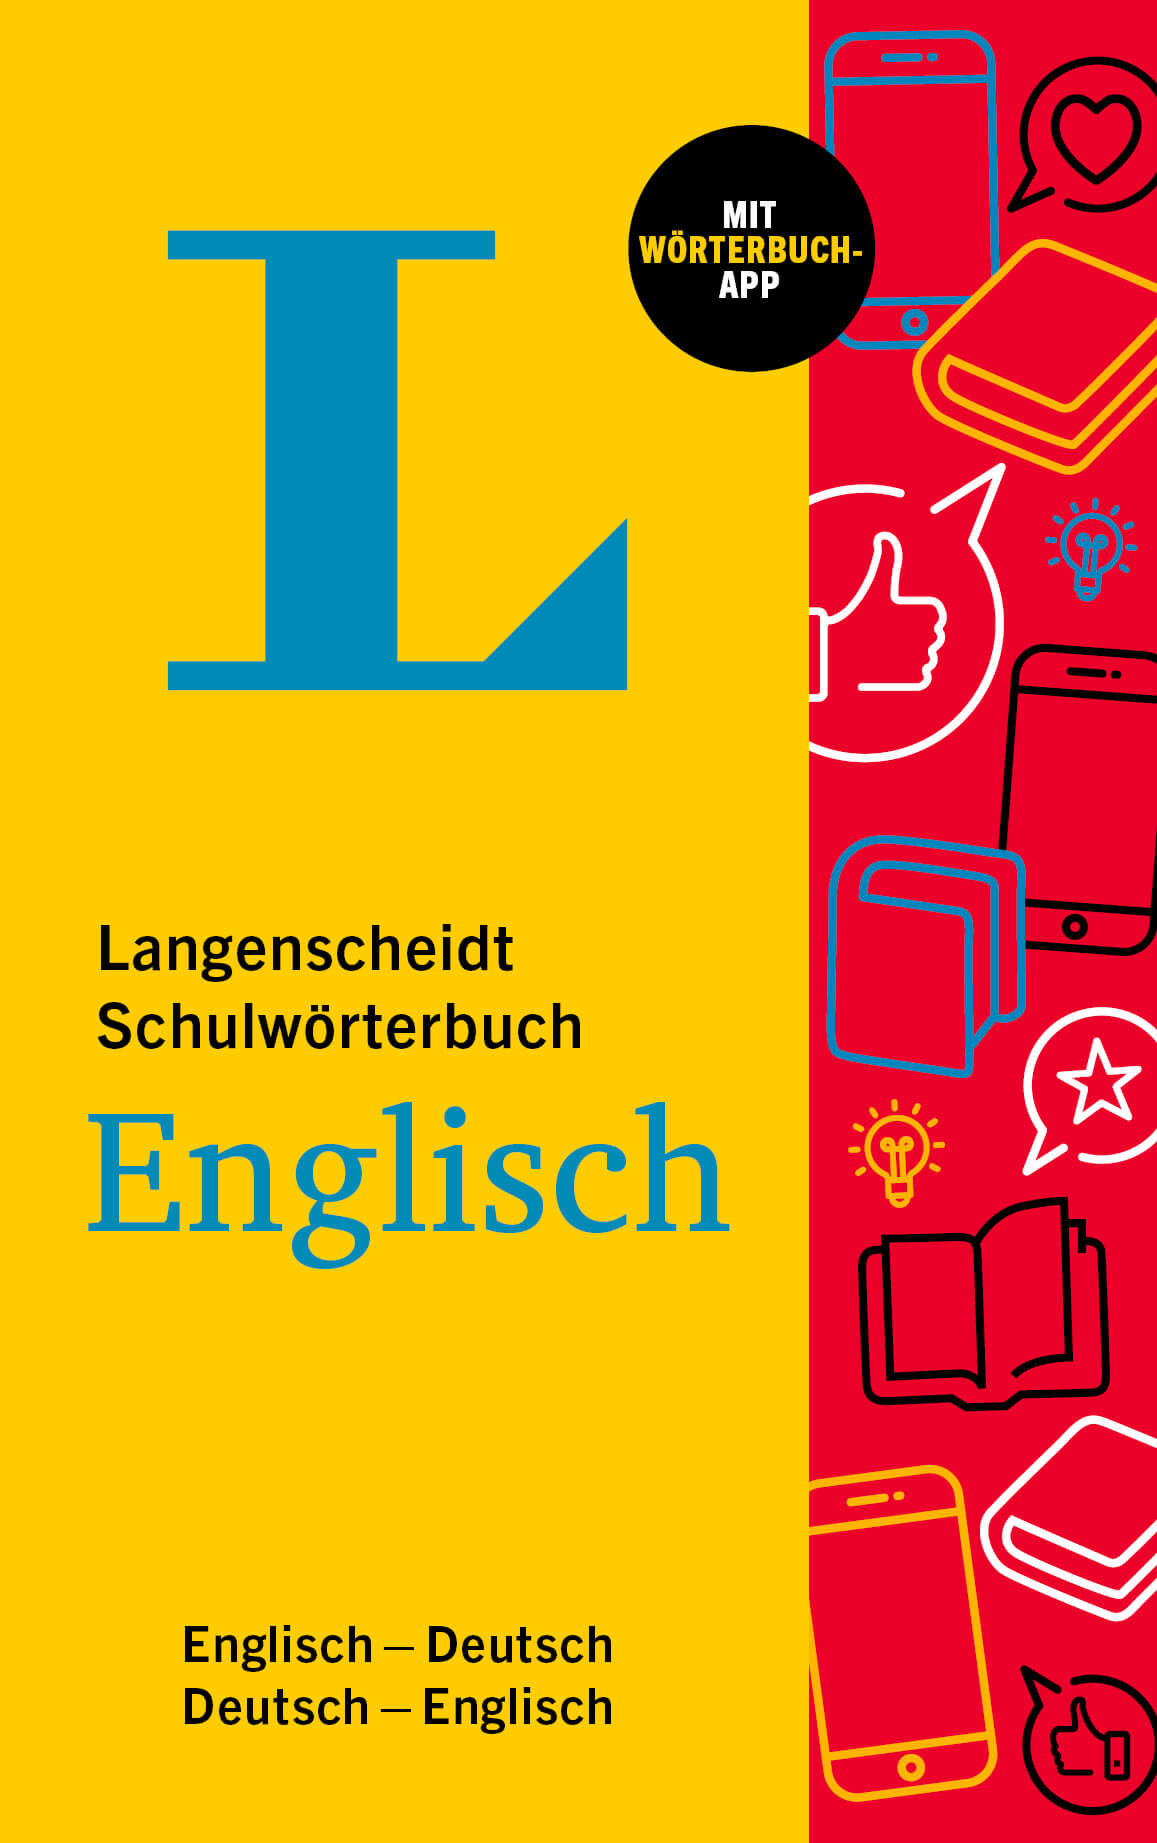 Schulwörterbuch Englisch Langenscheidt, SPEZIALBESTELLUNG